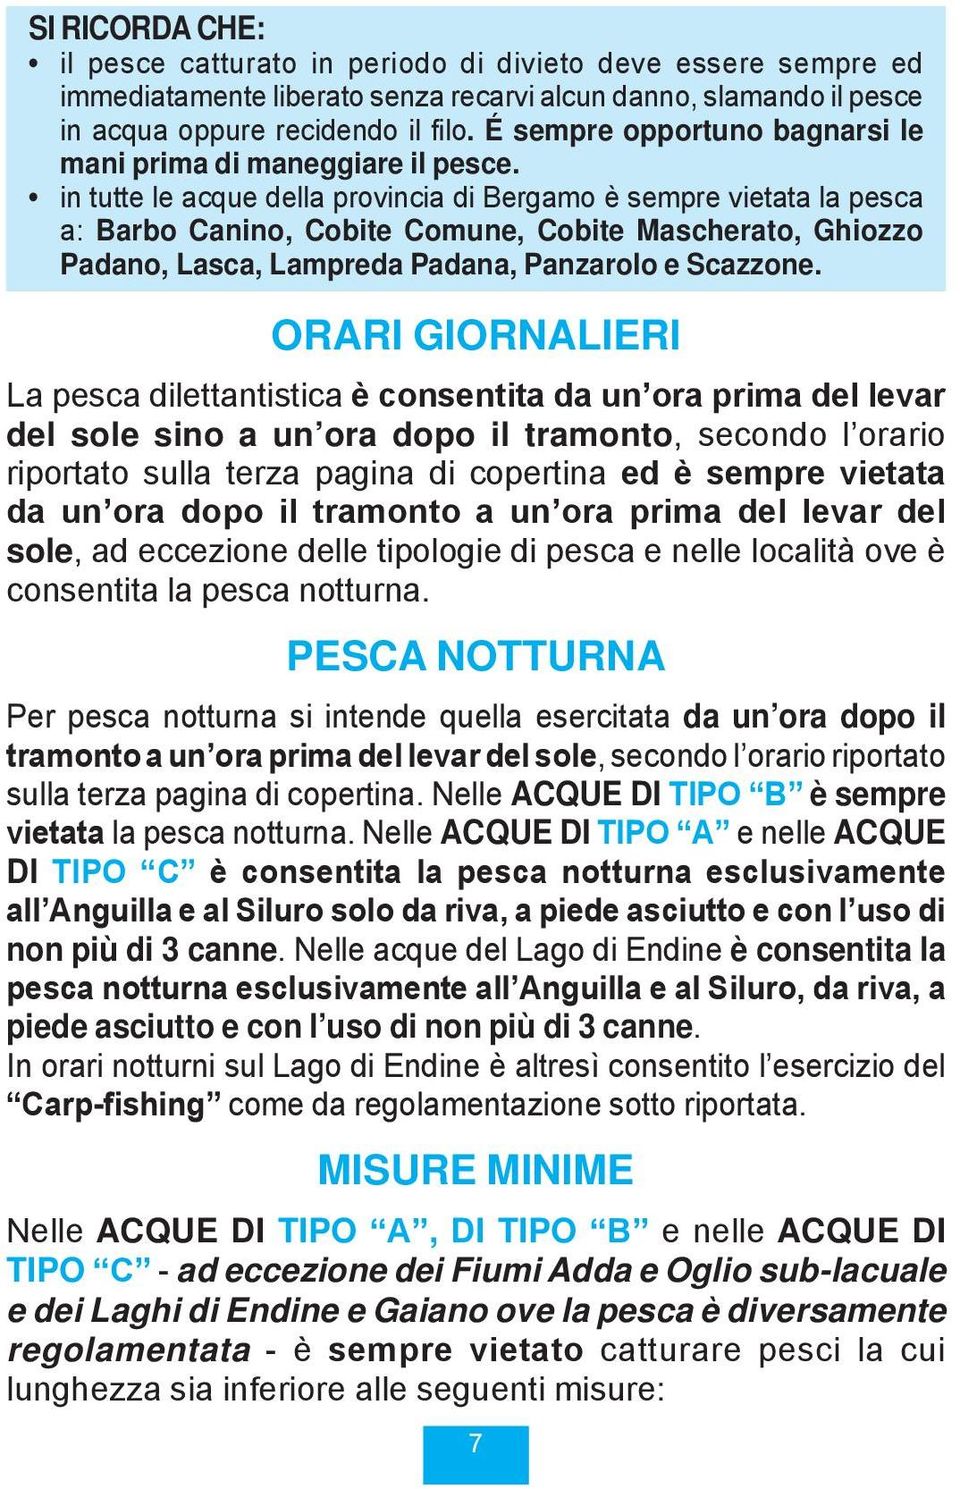 in tutte le acque della provincia di Bergamo è sempre vietata la pesca a: Barbo Canino, Cobite Comune, Cobite Mascherato, Ghiozzo Padano, Lasca, Lampreda Padana, Panzarolo e Scazzone.